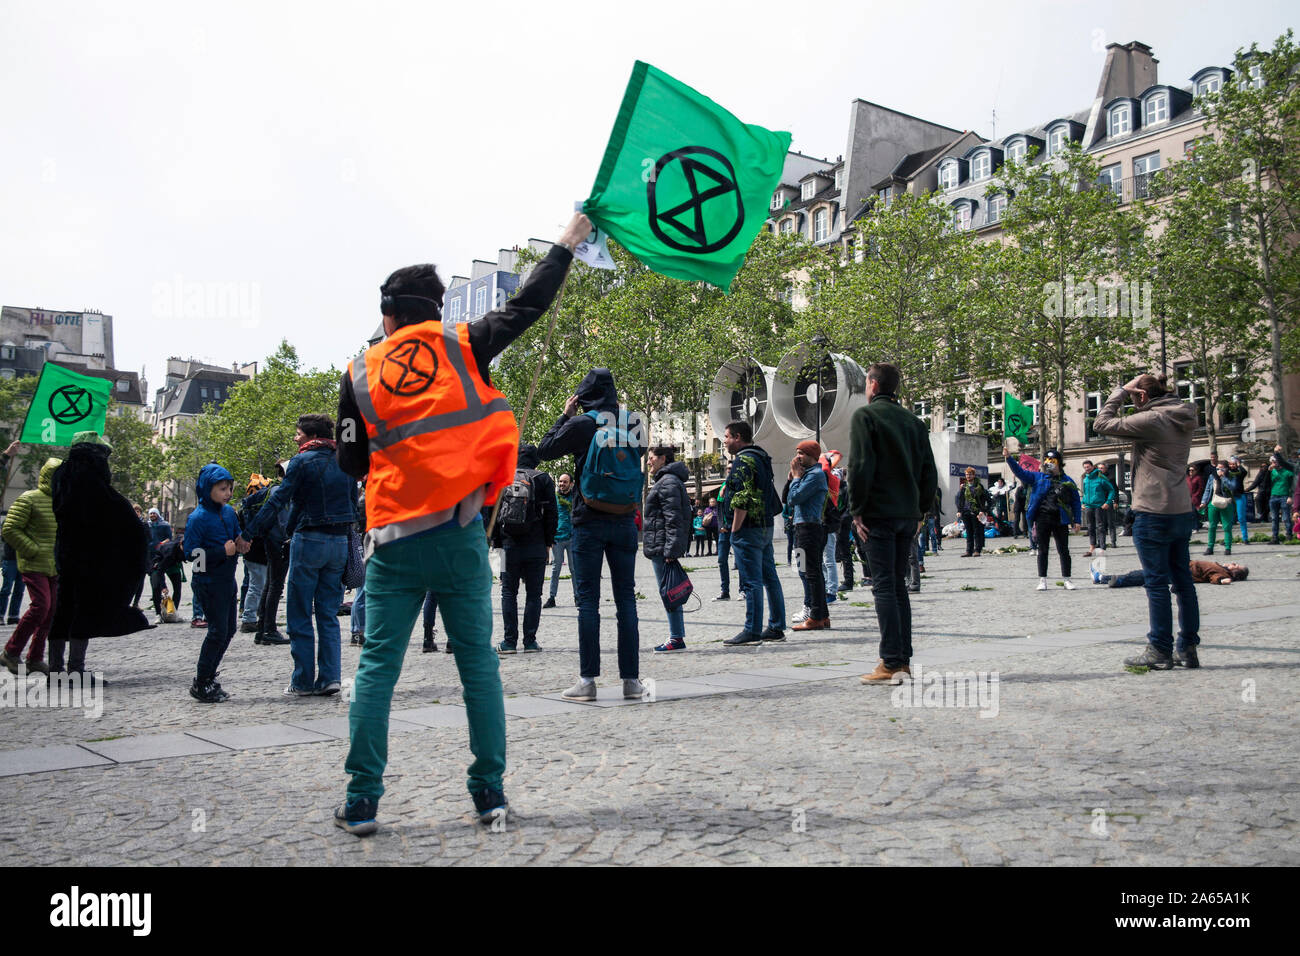 Le 27 avril, 12 h 05, dans le carré en font du Centre Pompidou à Paris, les militants de la situation socio-politique "mouvement de rébellion d'Extinction France" j Banque D'Images